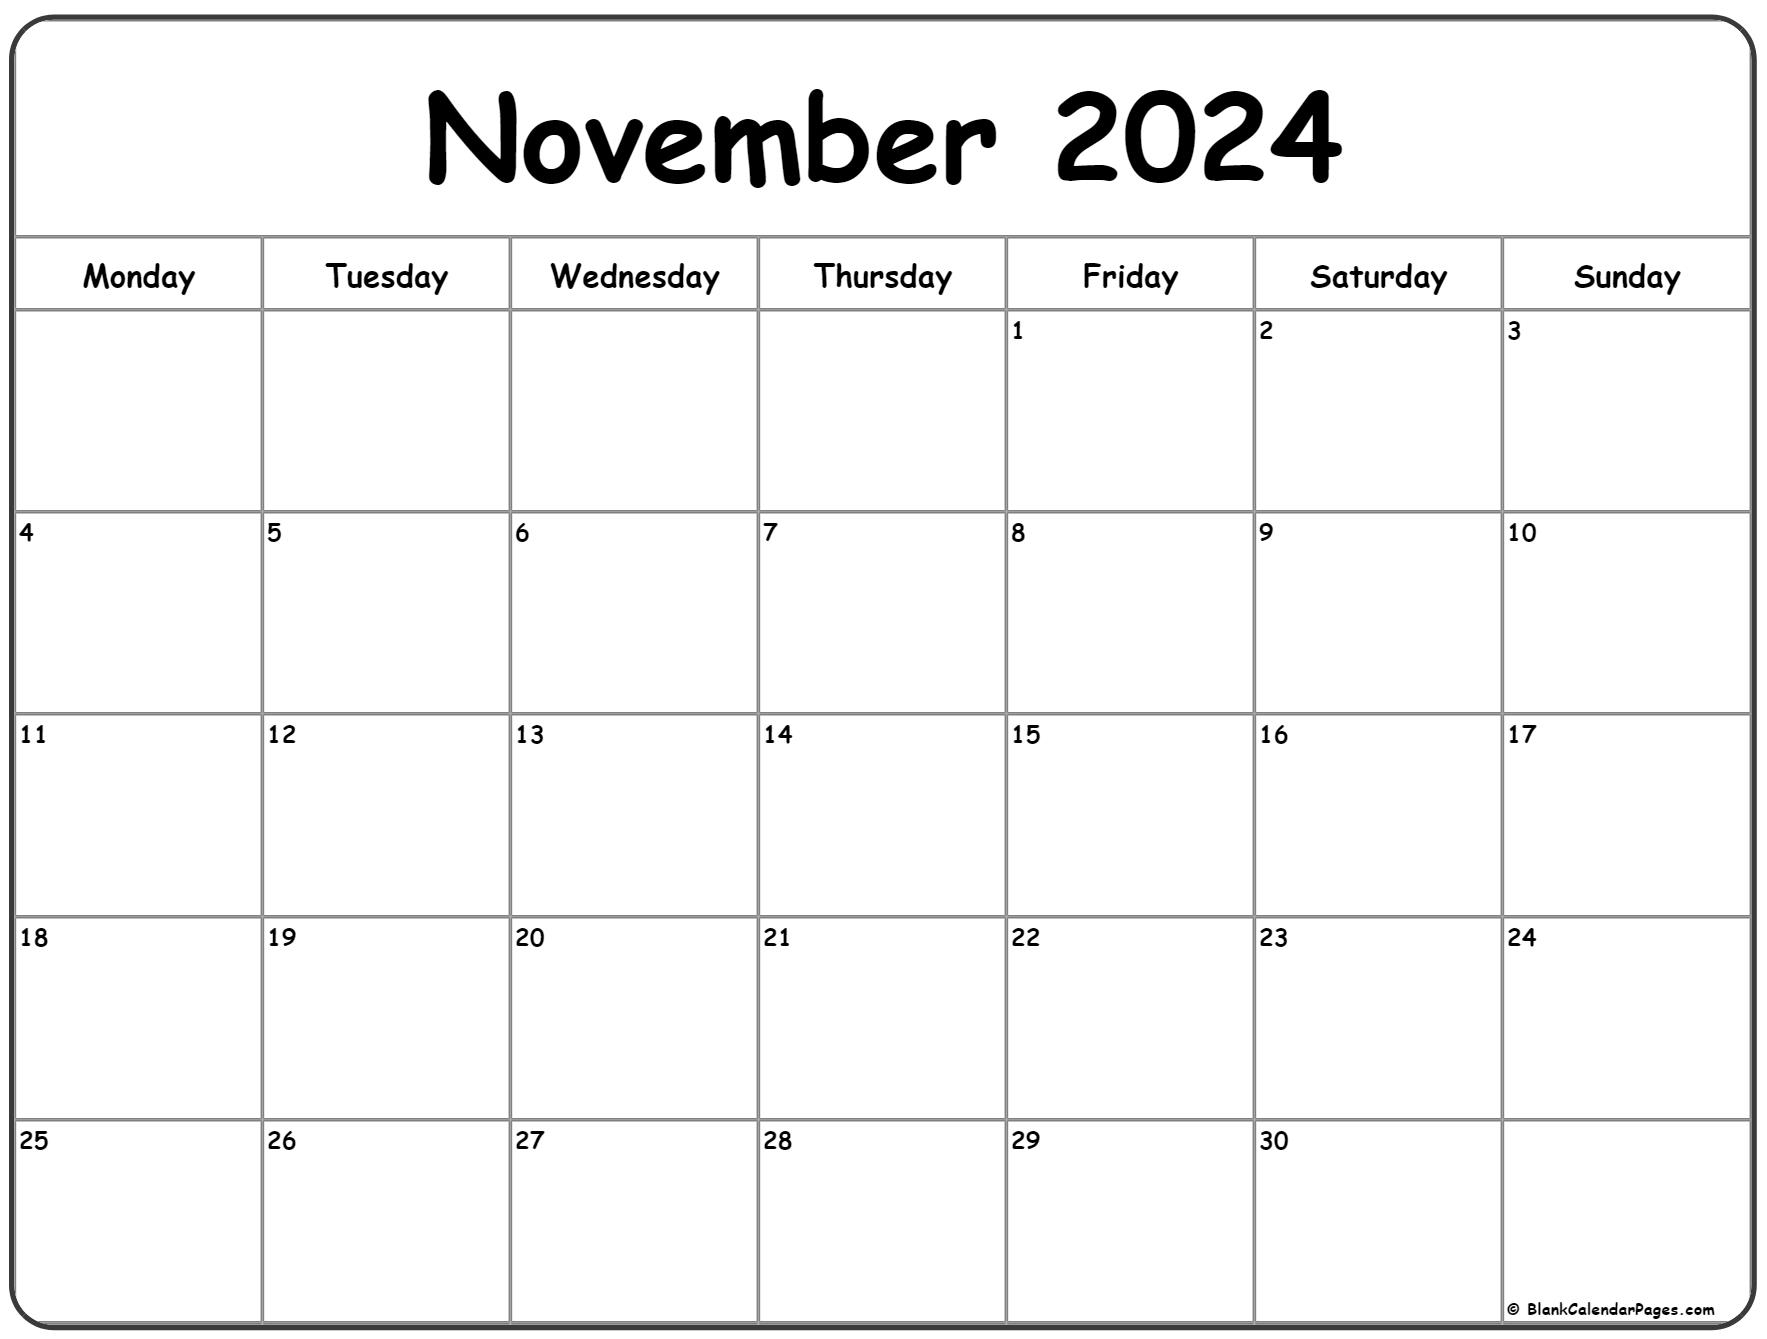 November 2024 Monday Calendar | Monday To Sunday for Printable Calendar 2024 November